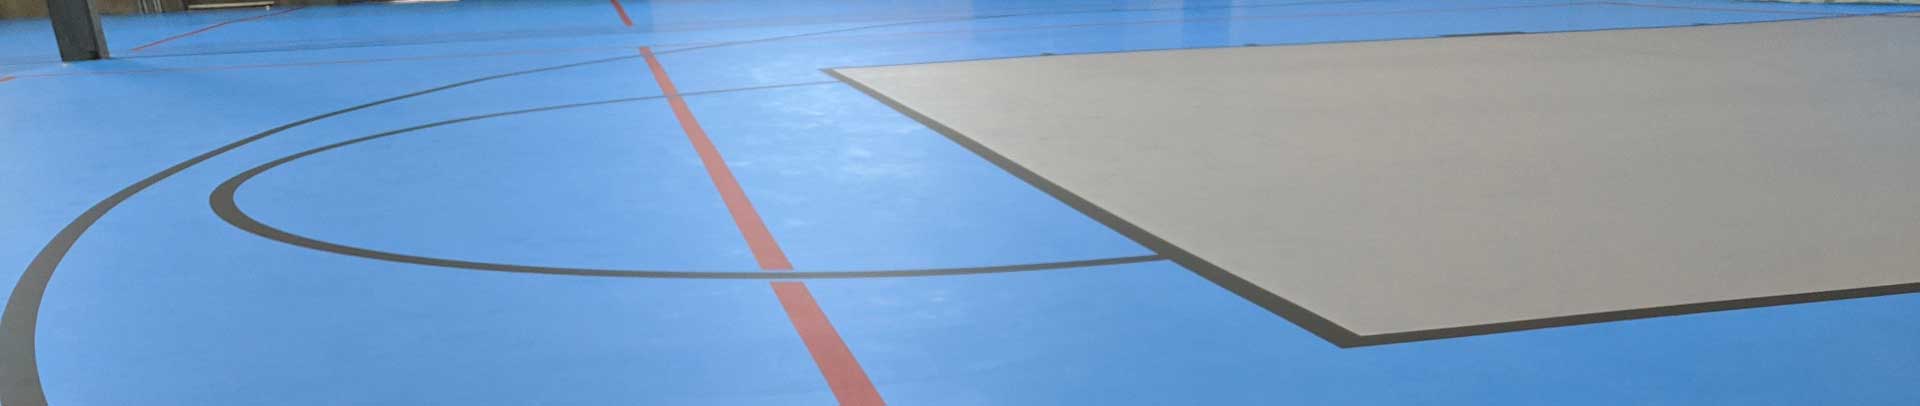 VersaFLO Rubber Flooring for School Indoor Games